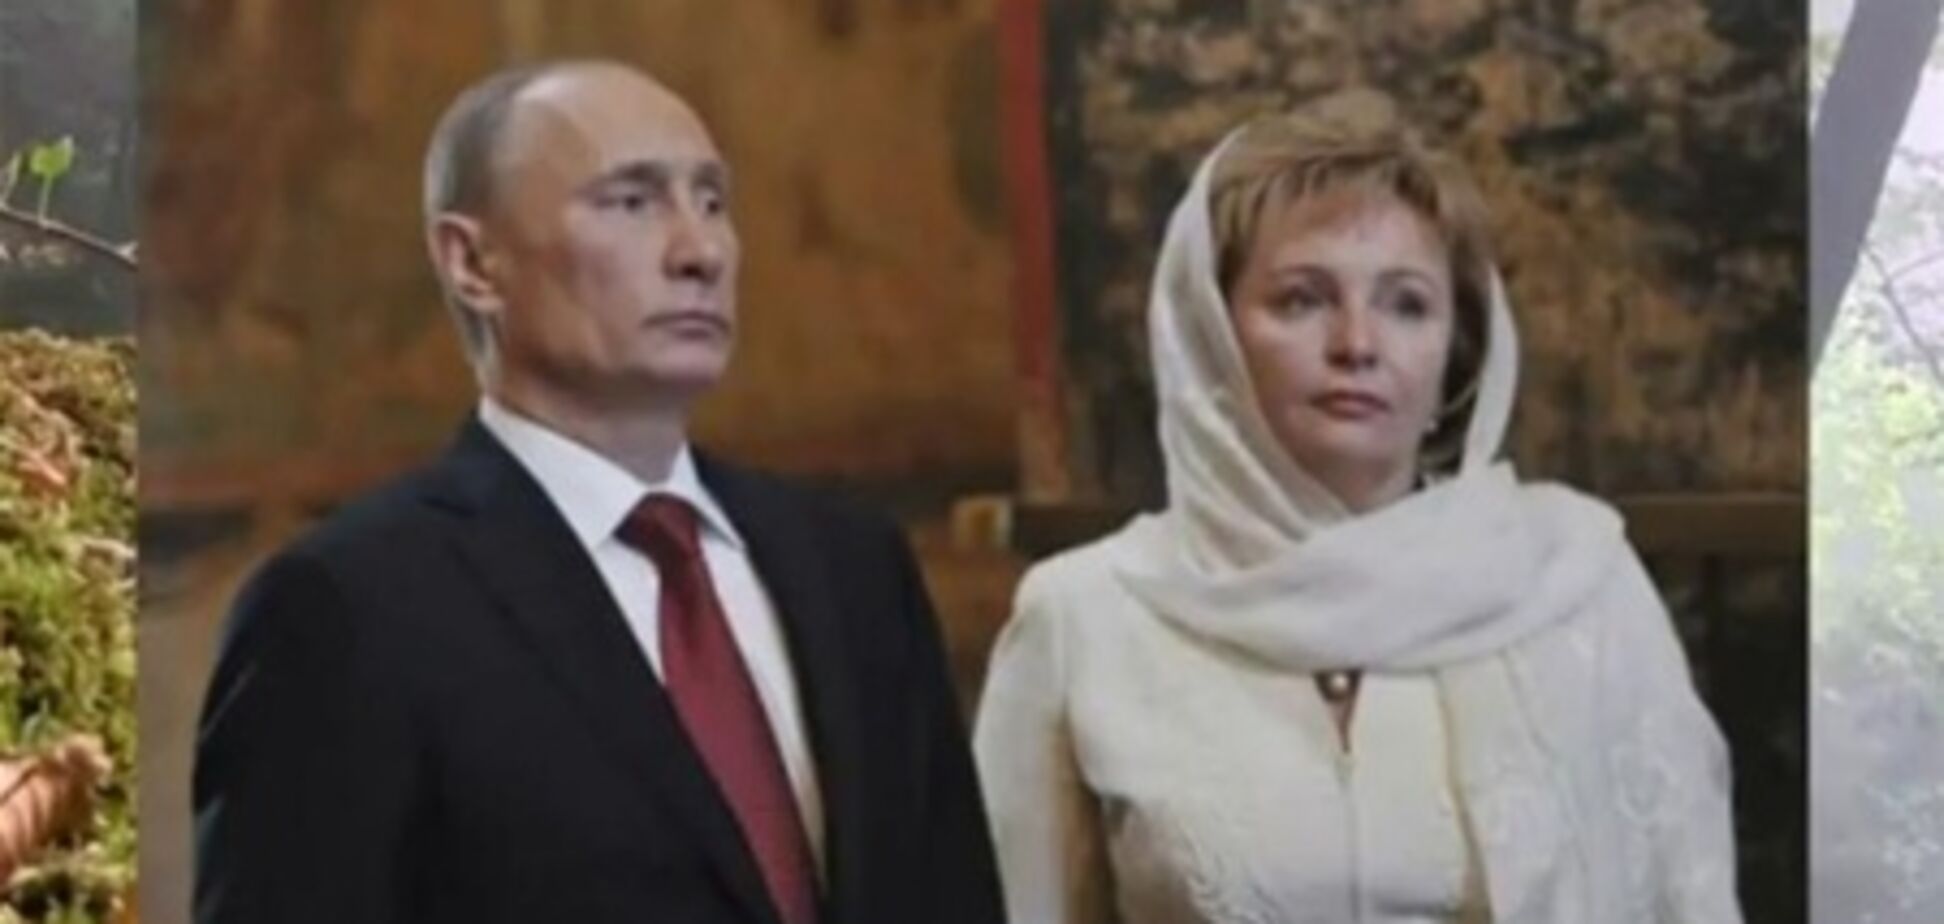 Одеський бізнесмен склав пісню про розлучення Путіних